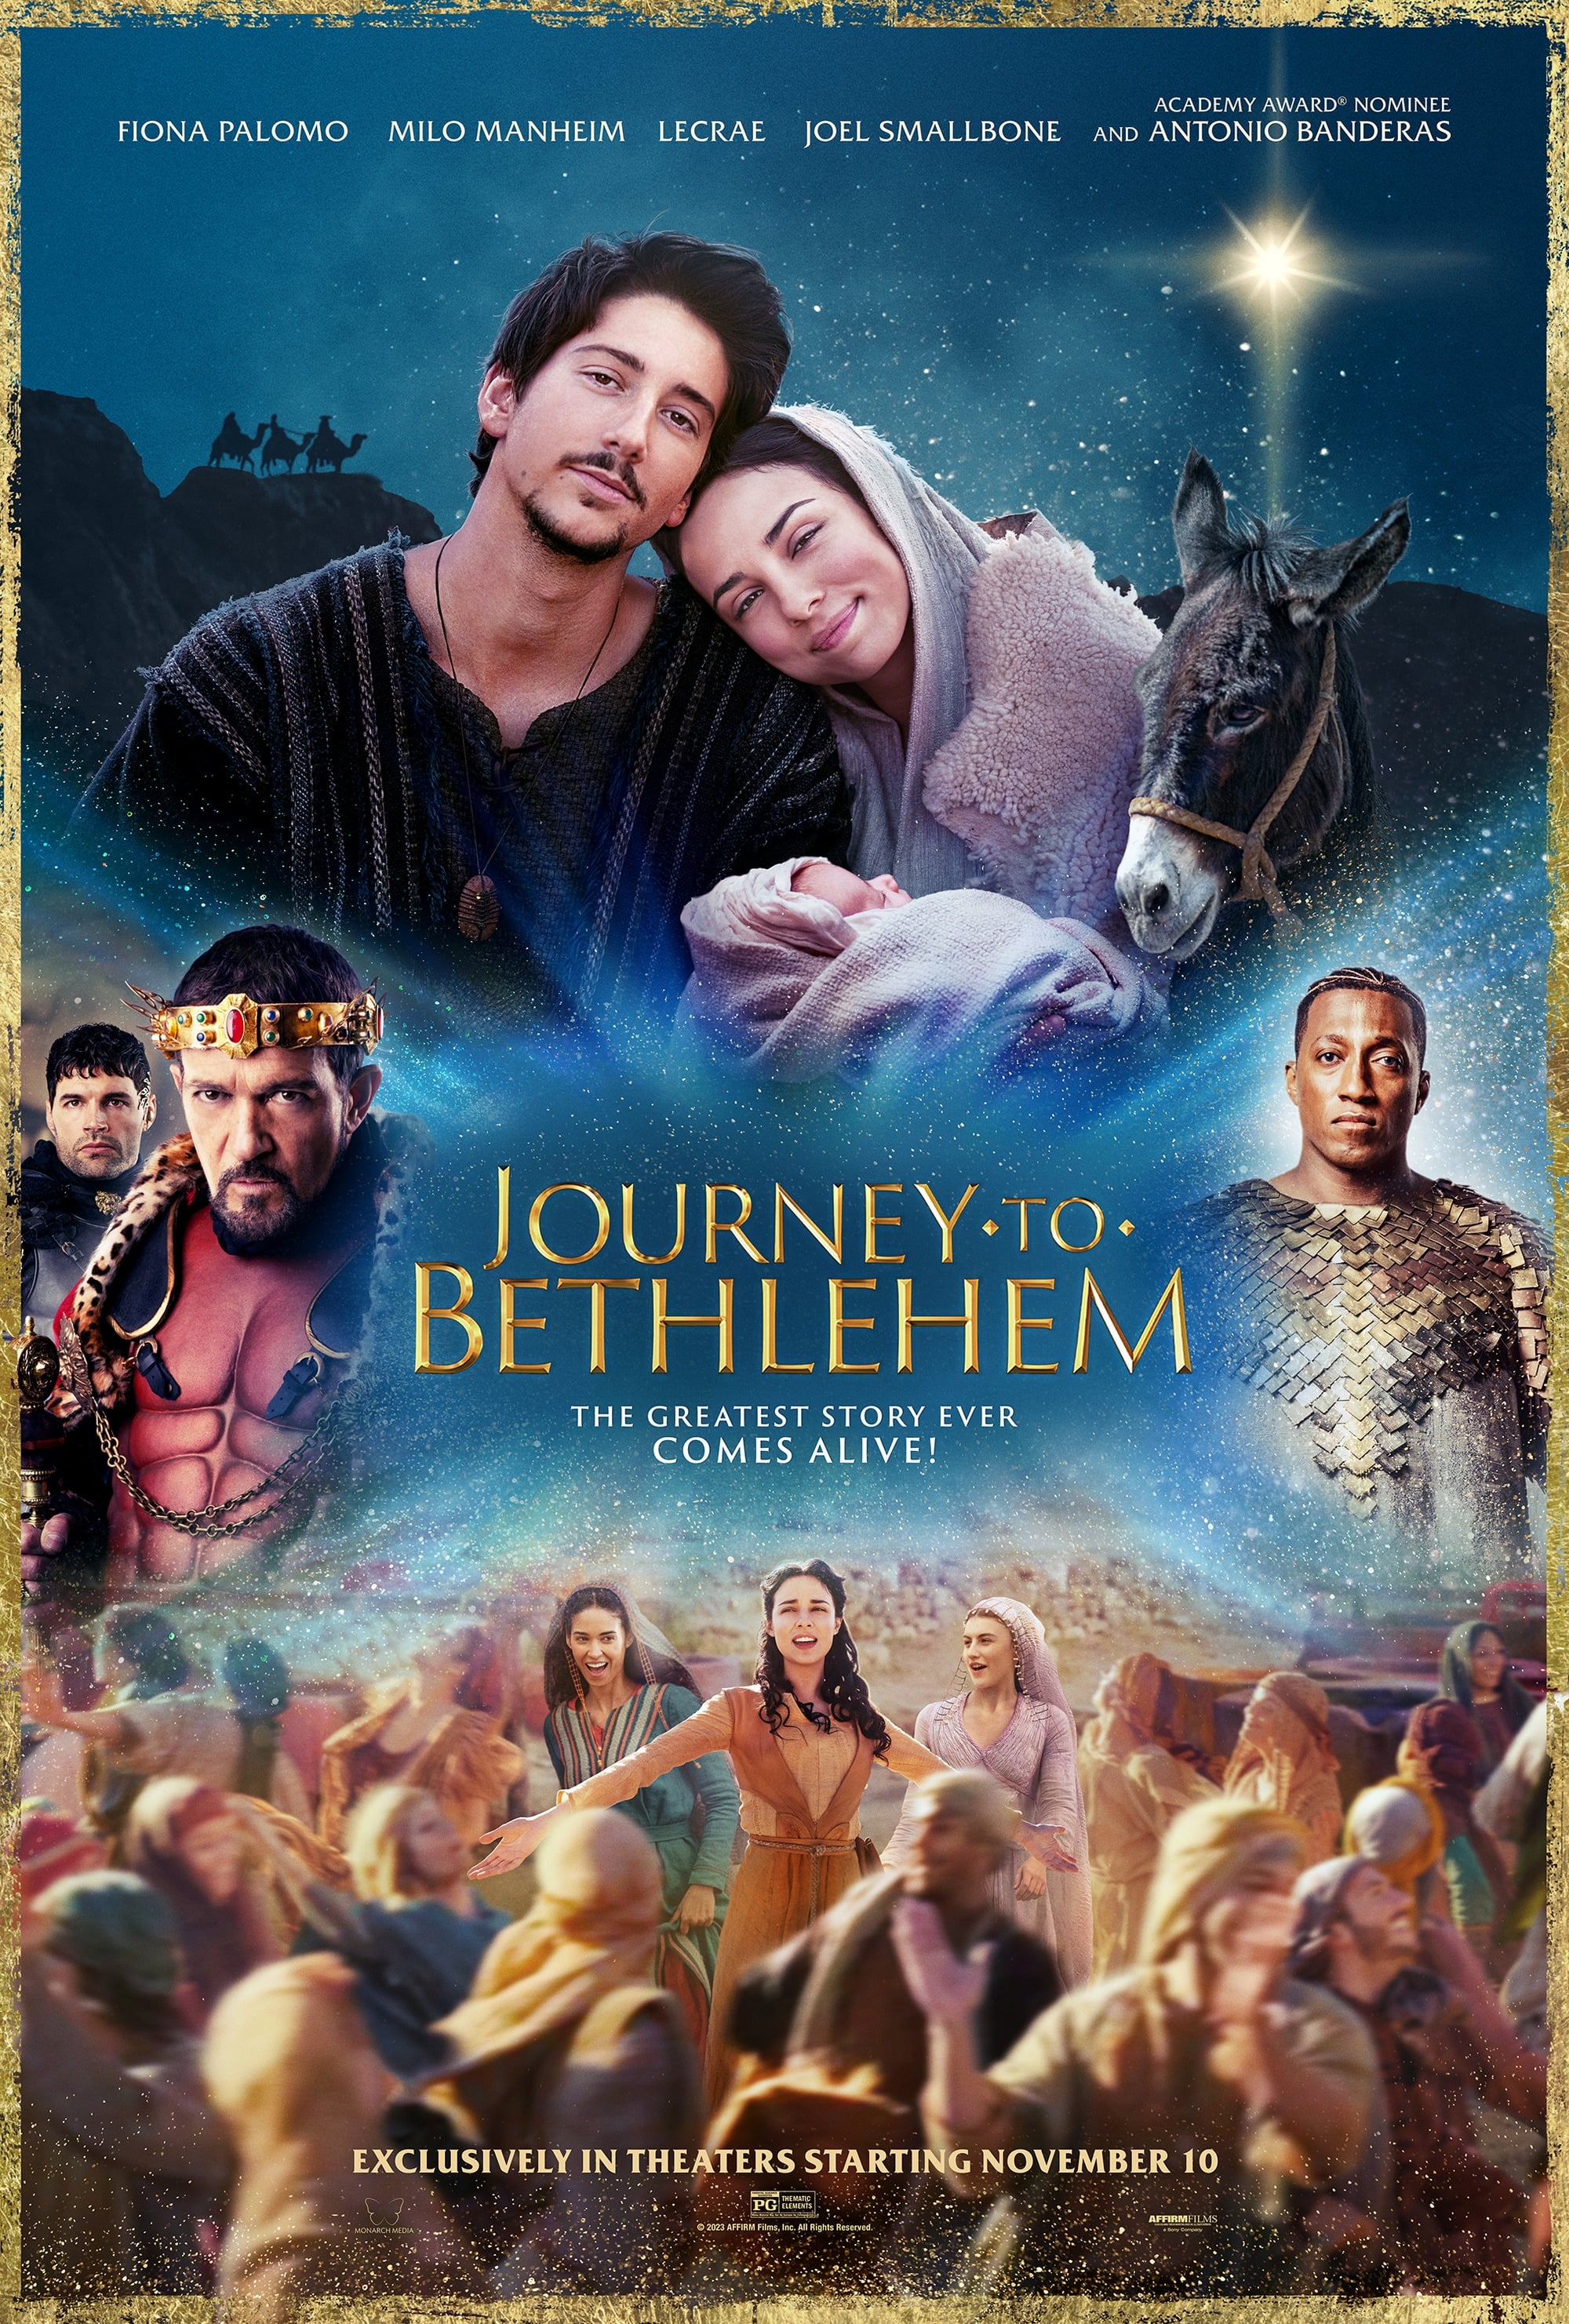 images of journey to bethlehem